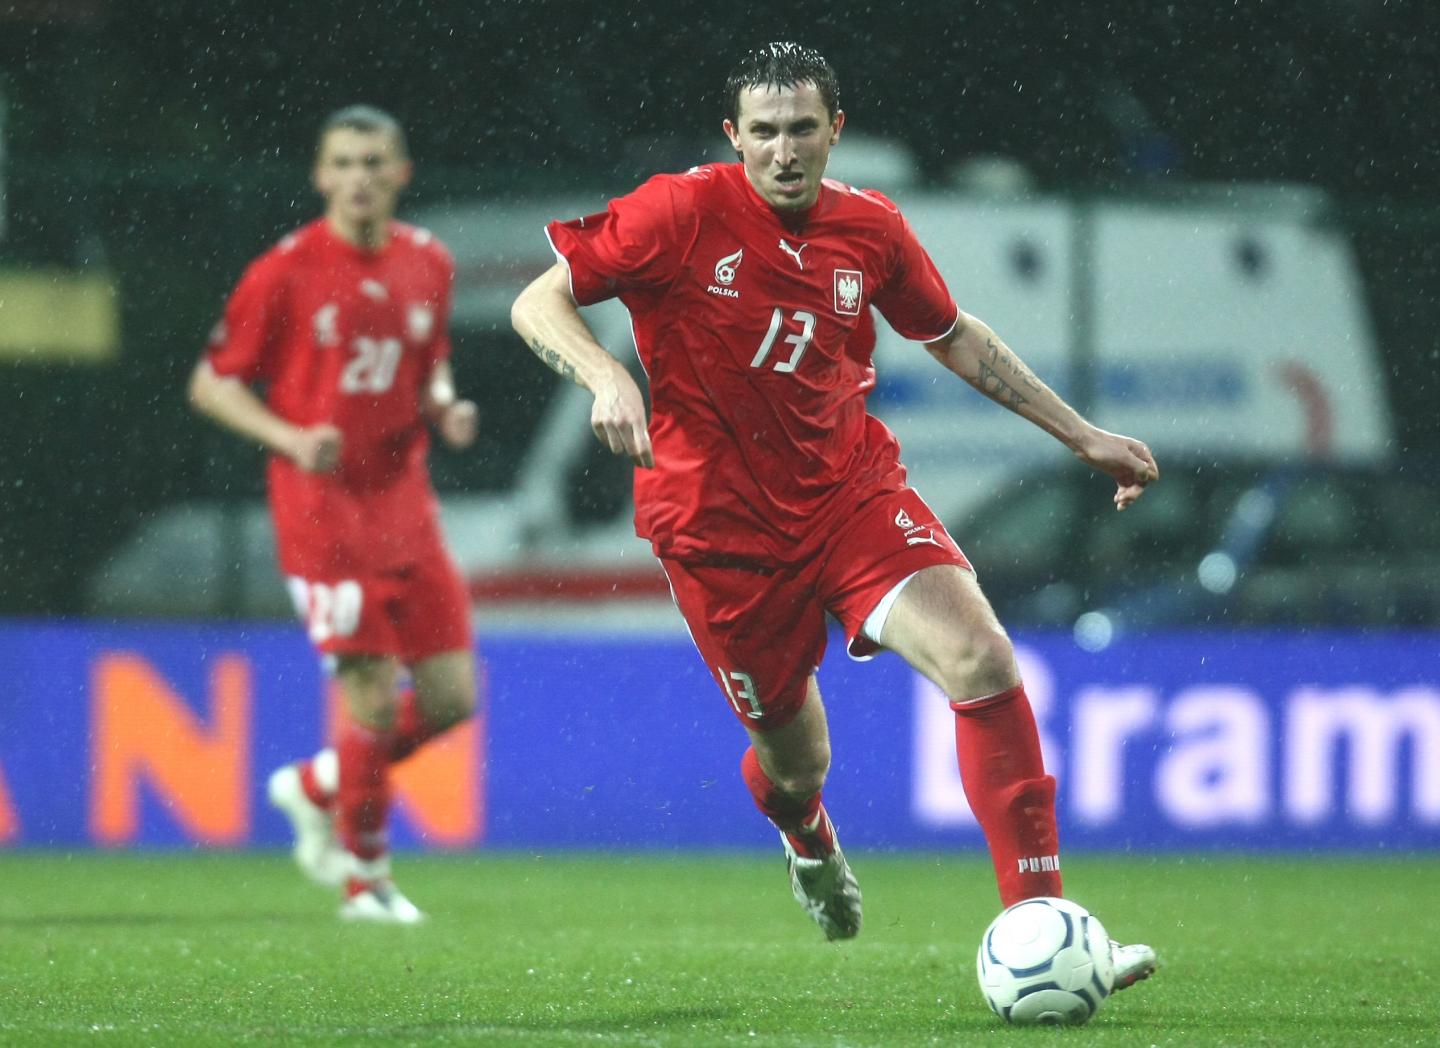 Michał Goliński podczas meczu Polska - Bośnia i Hercegowina 1:0 (15.12.2007).